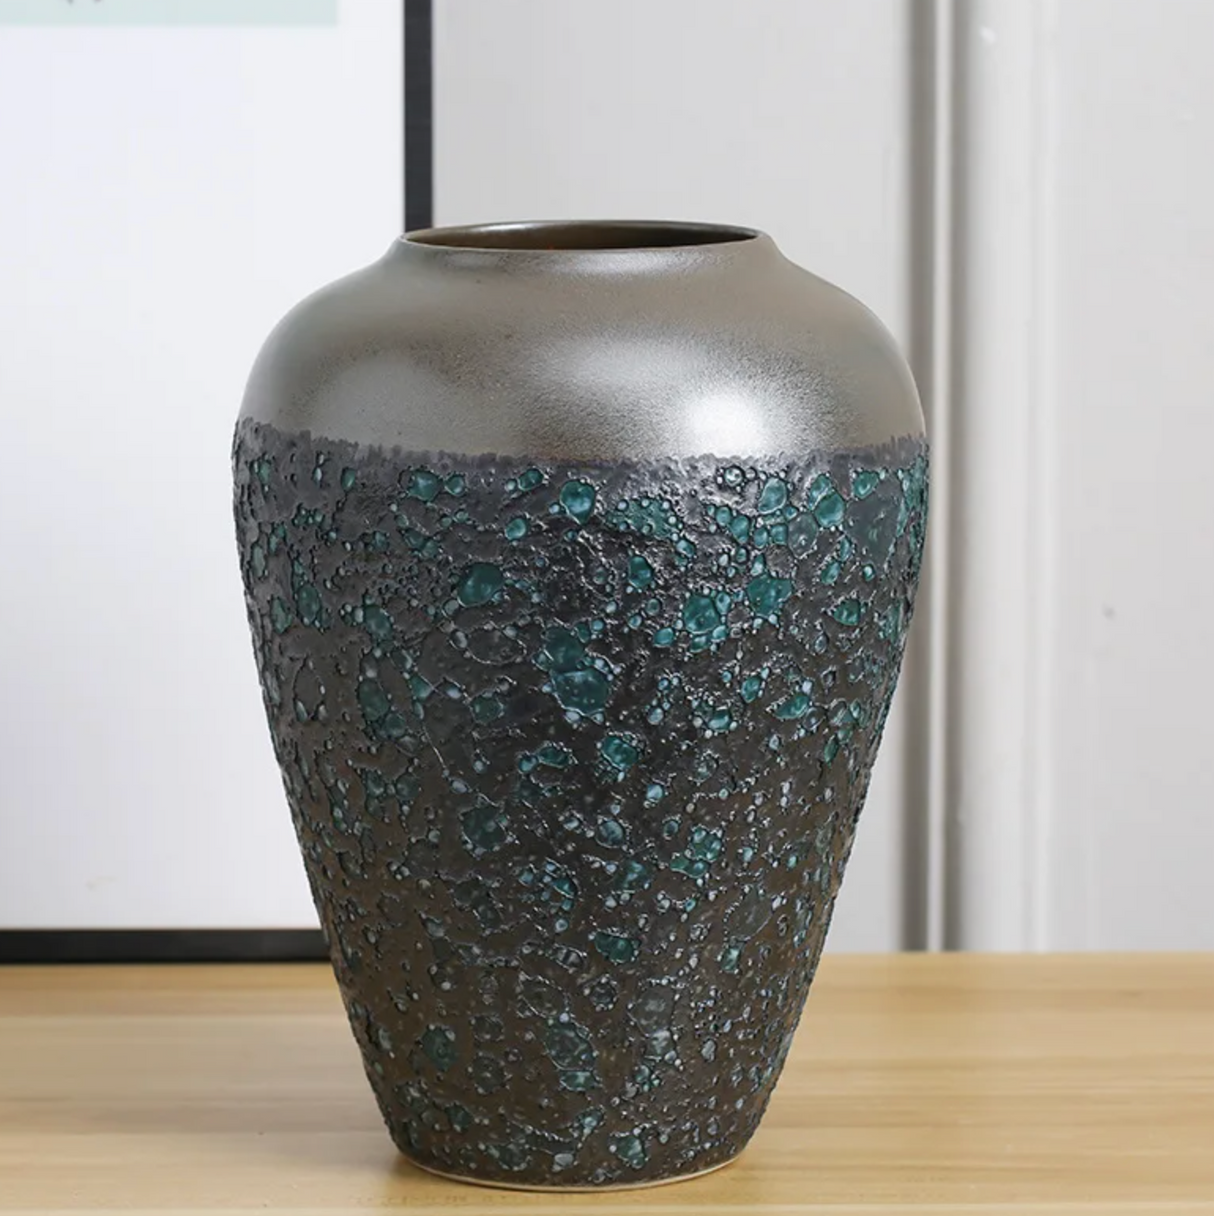 Japanese retro style vase